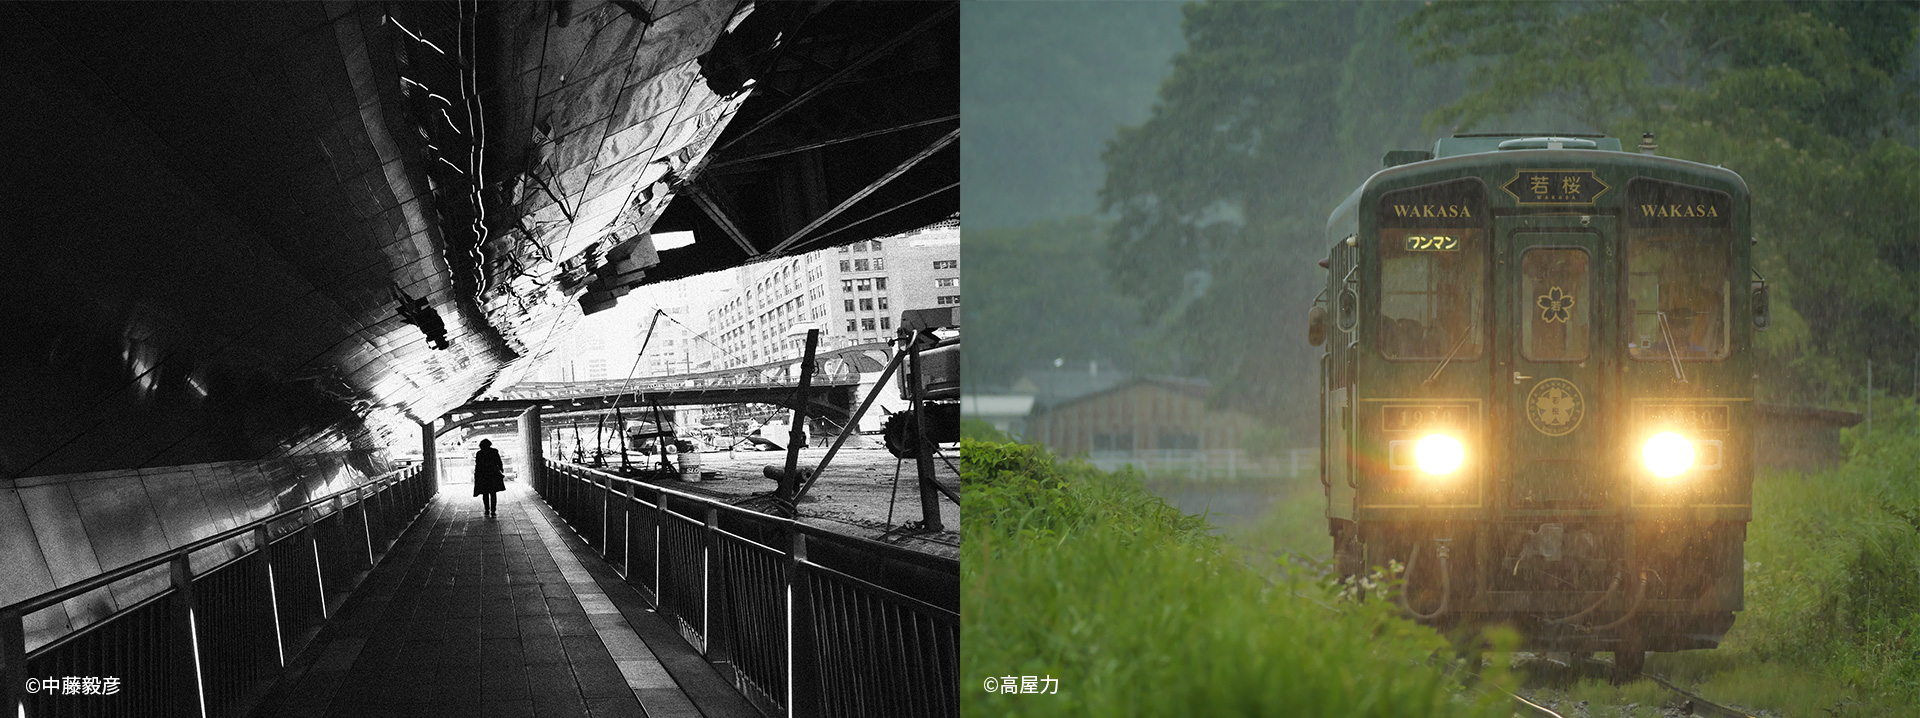 川沿いの高架下を歩く人物/雨の中を走る列車